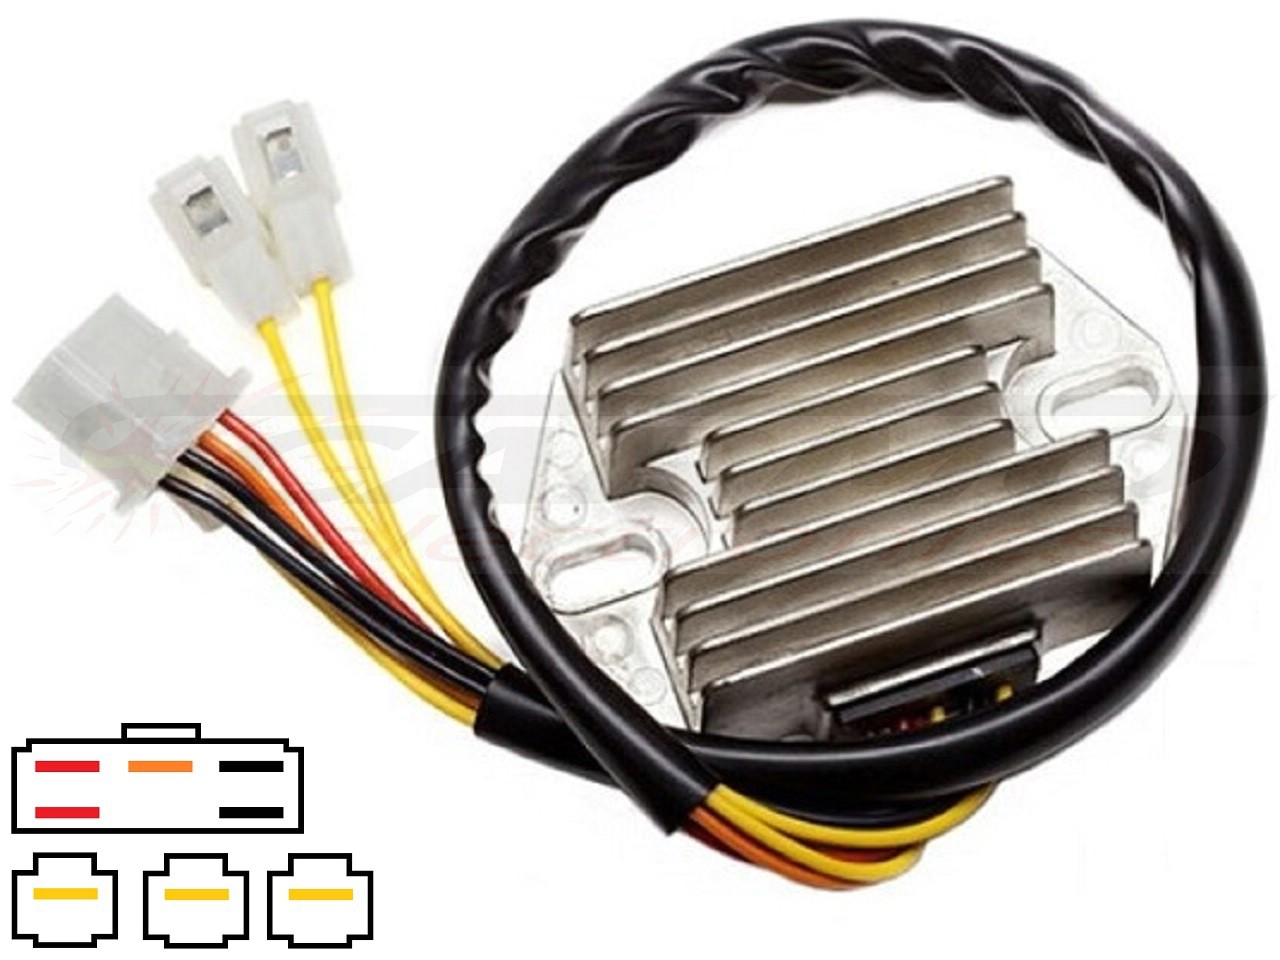 CARR751 Suzuki Intruder MOSFET Voltage regulator rectifier - Click Image to Close